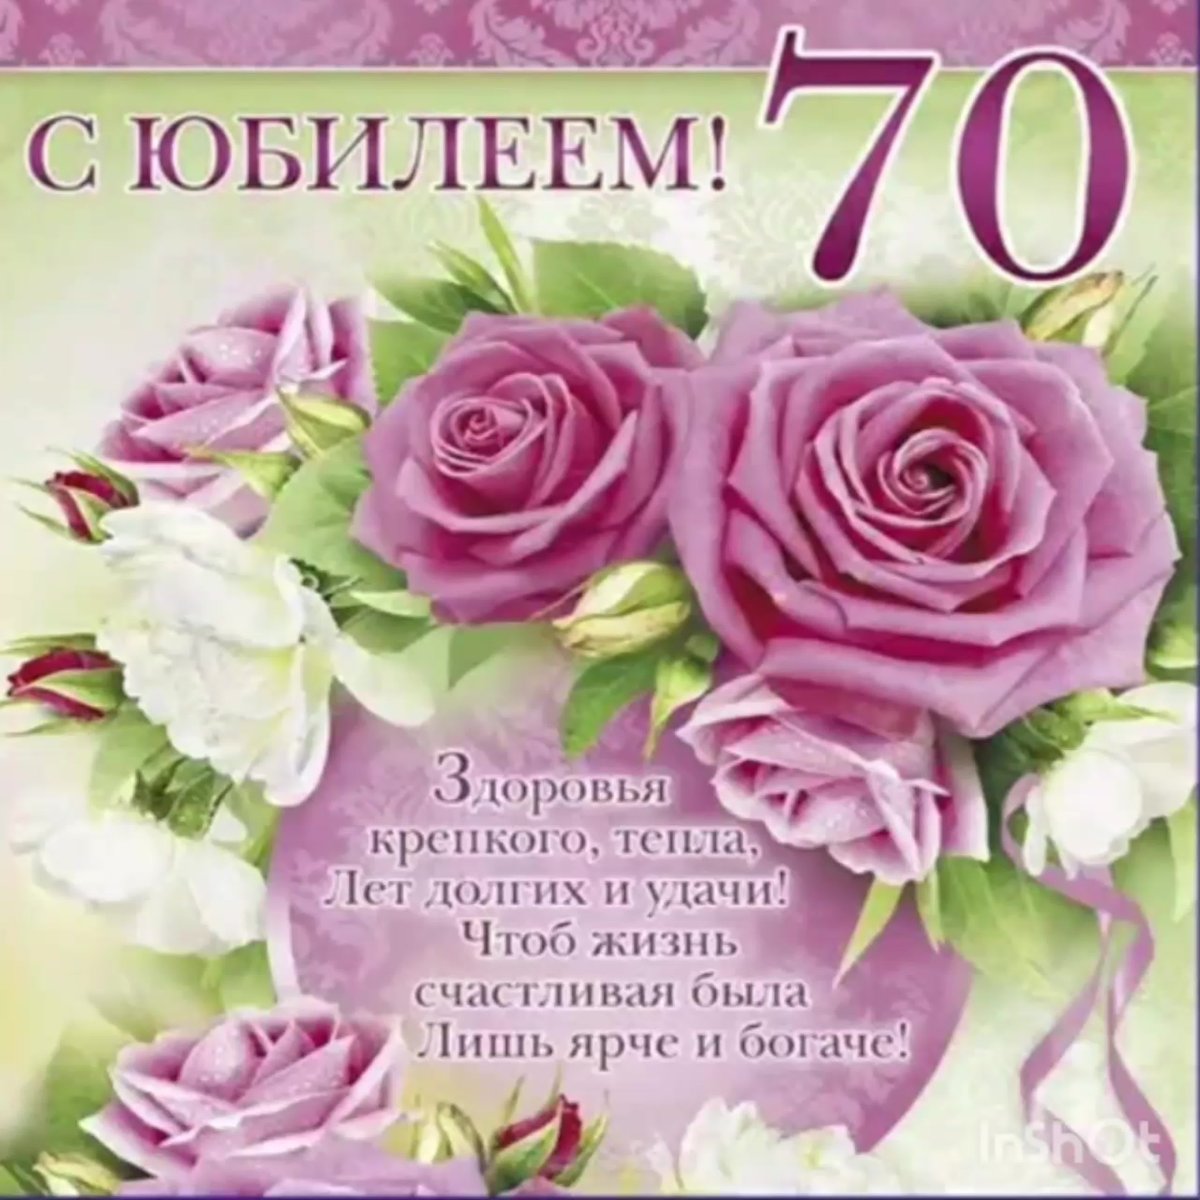 Поздравления с днем рождения 70 лет сестре